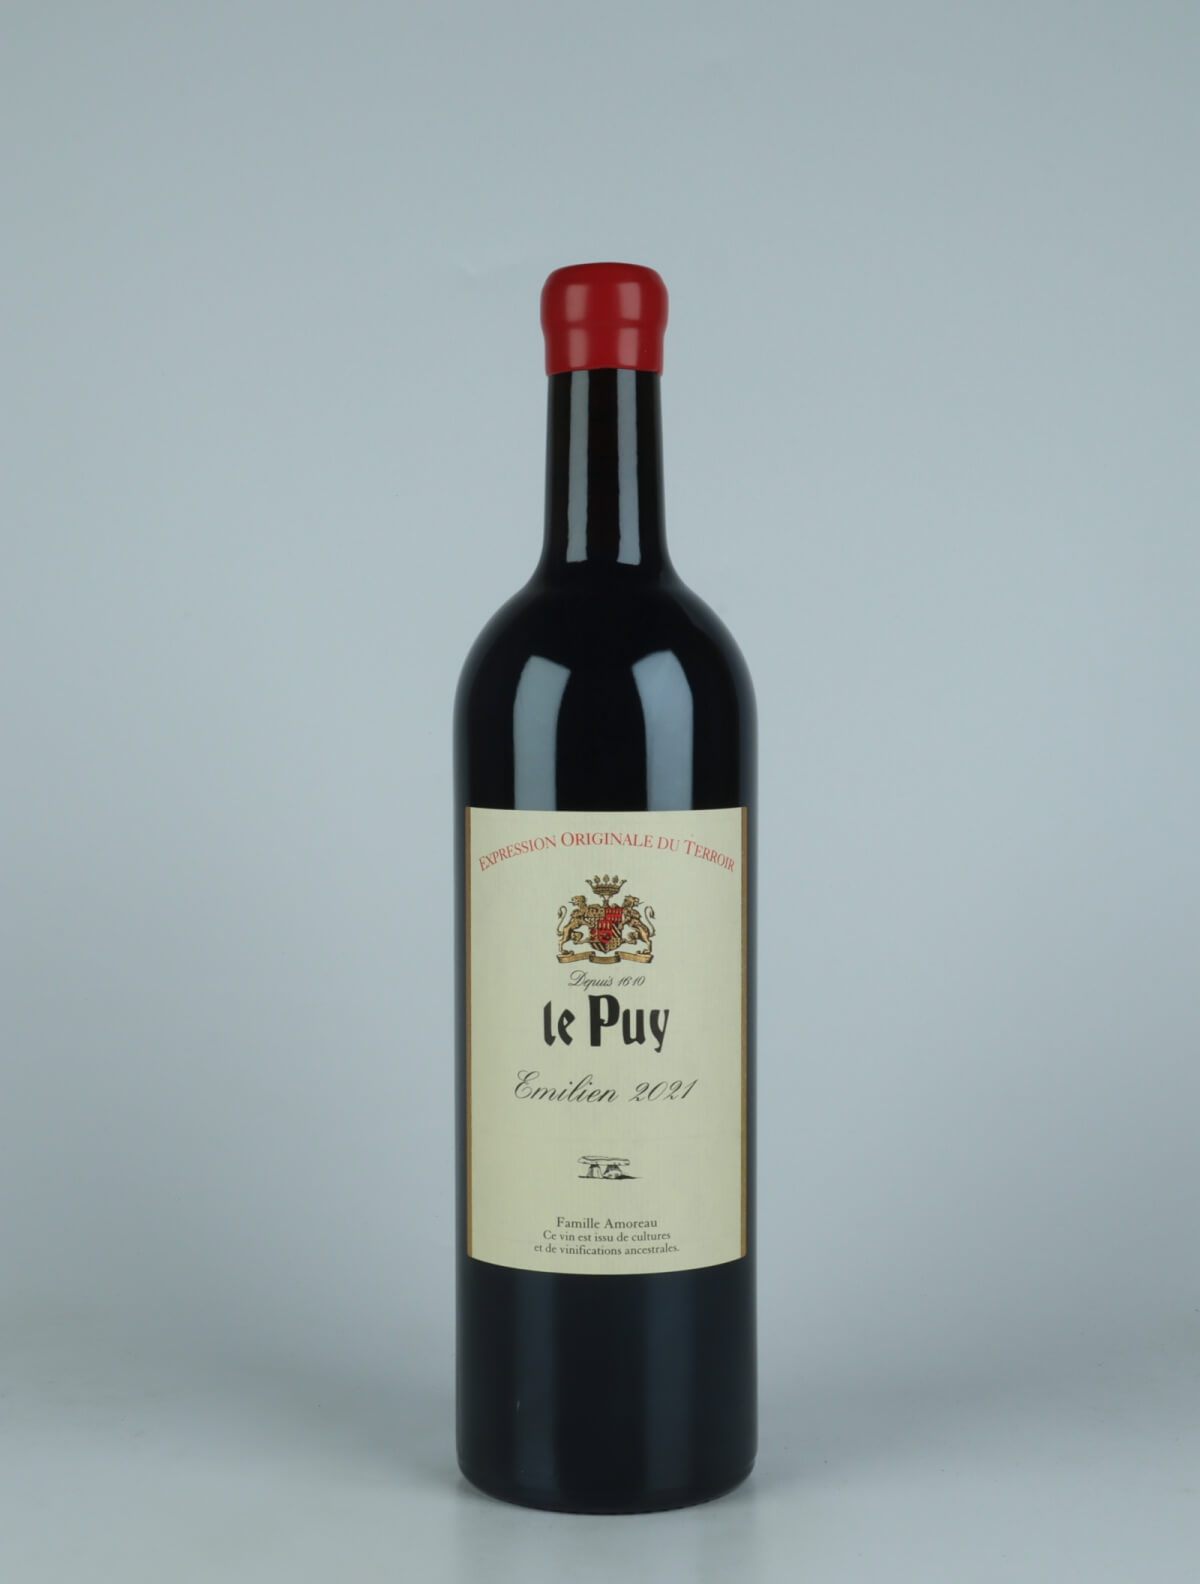 En flaske 2021 Emilien Rødvin fra Château le Puy, Bordeaux i Frankrig